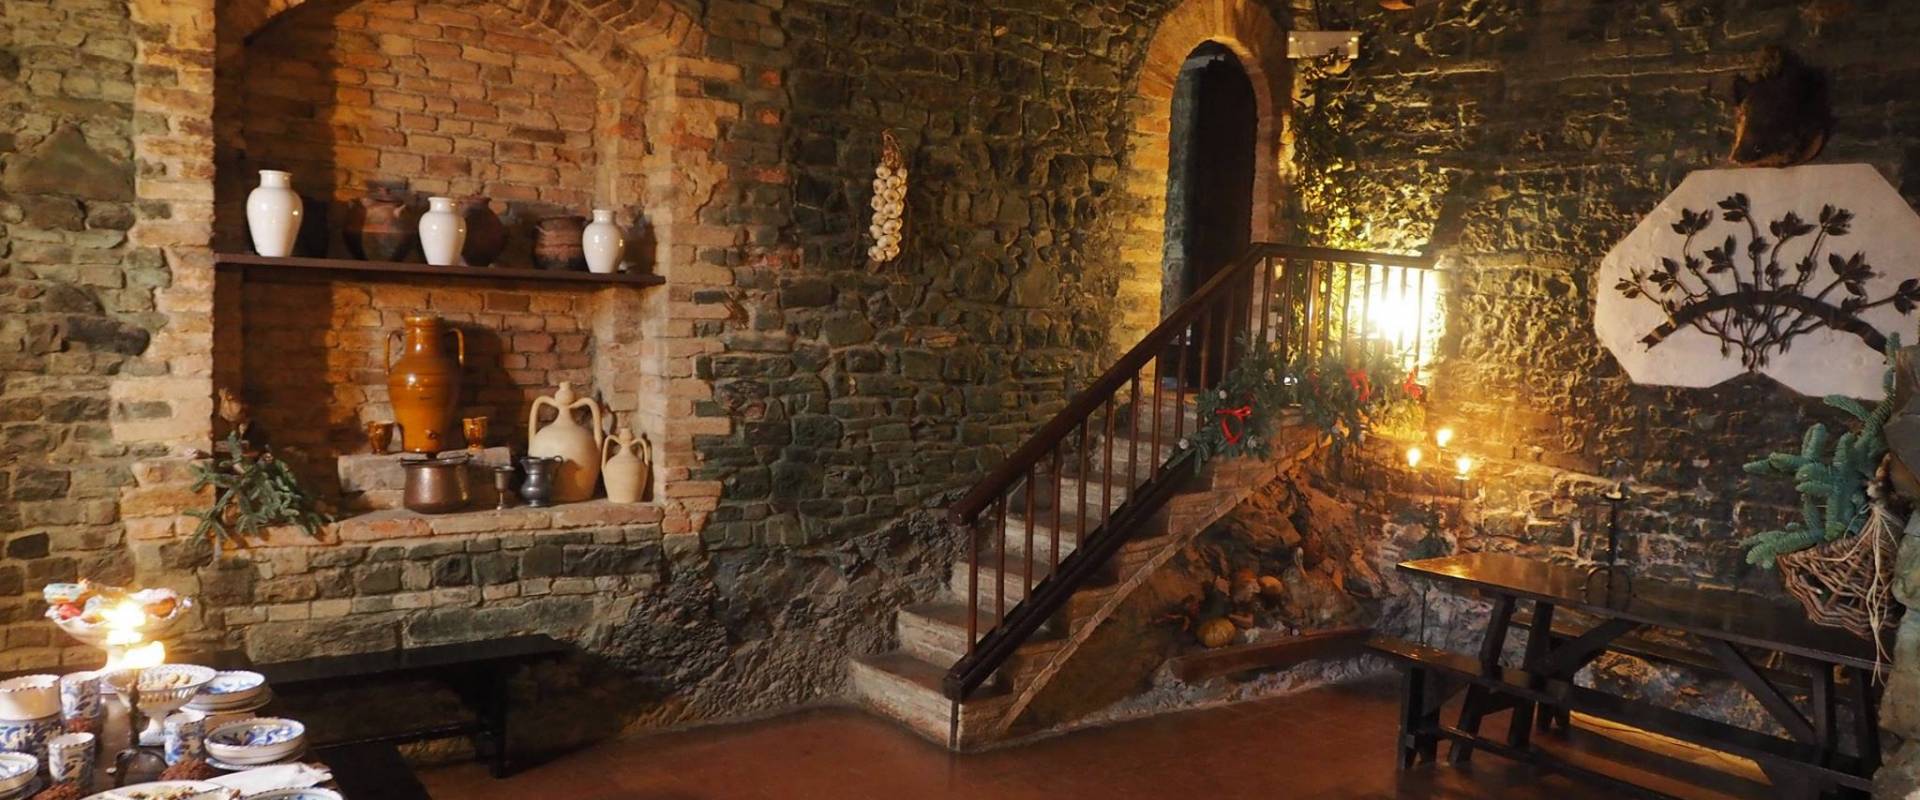 Castello di Gropparello - Le antiche cucine foto di Rita Trecci Gibelli